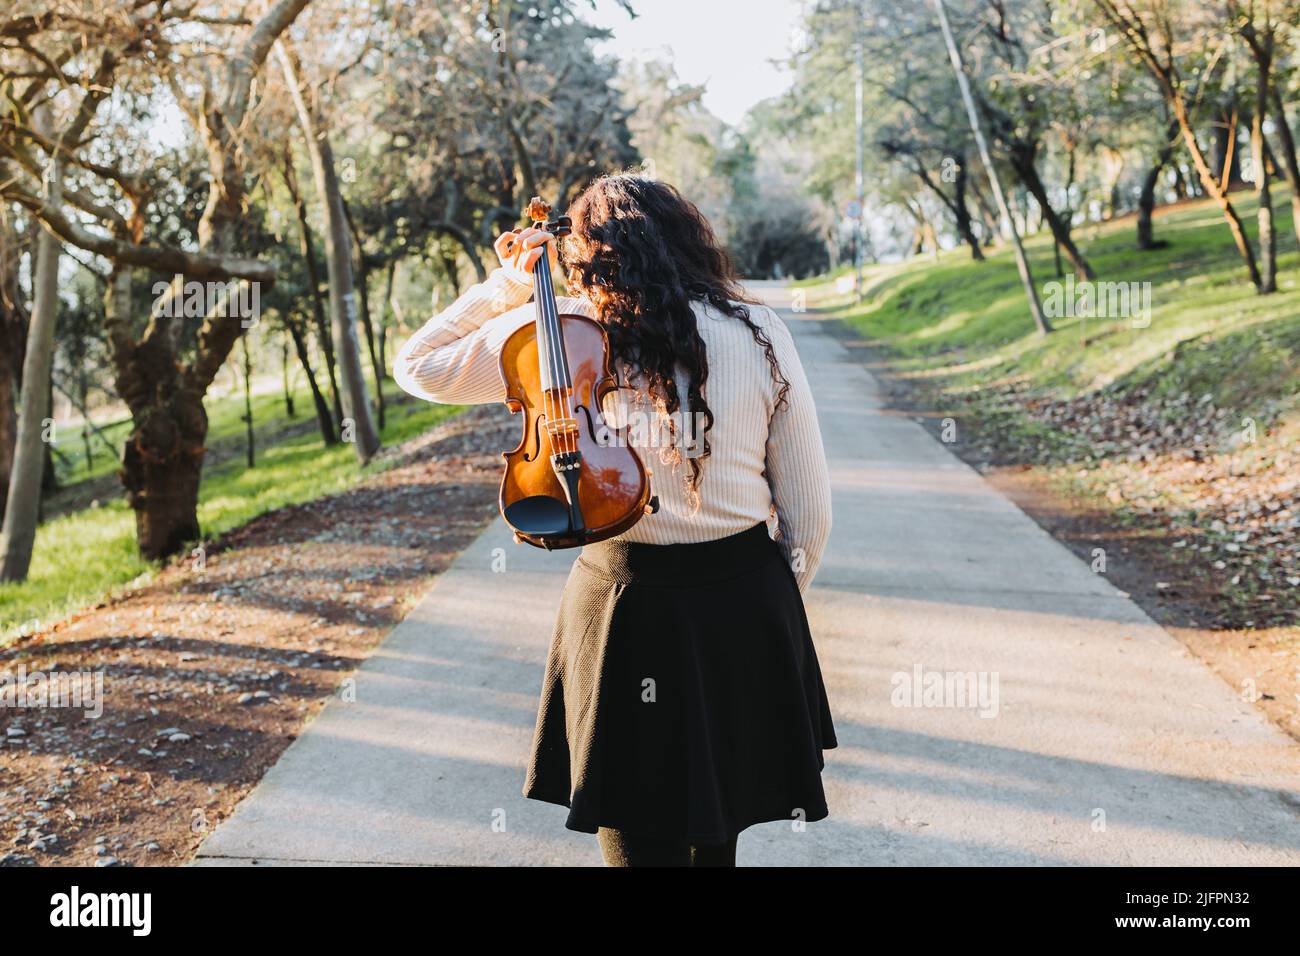 donna con brunette ricurly che tiene un violino sulla schiena, camminando attraverso la strada del parco al tramonto. Foto Stock